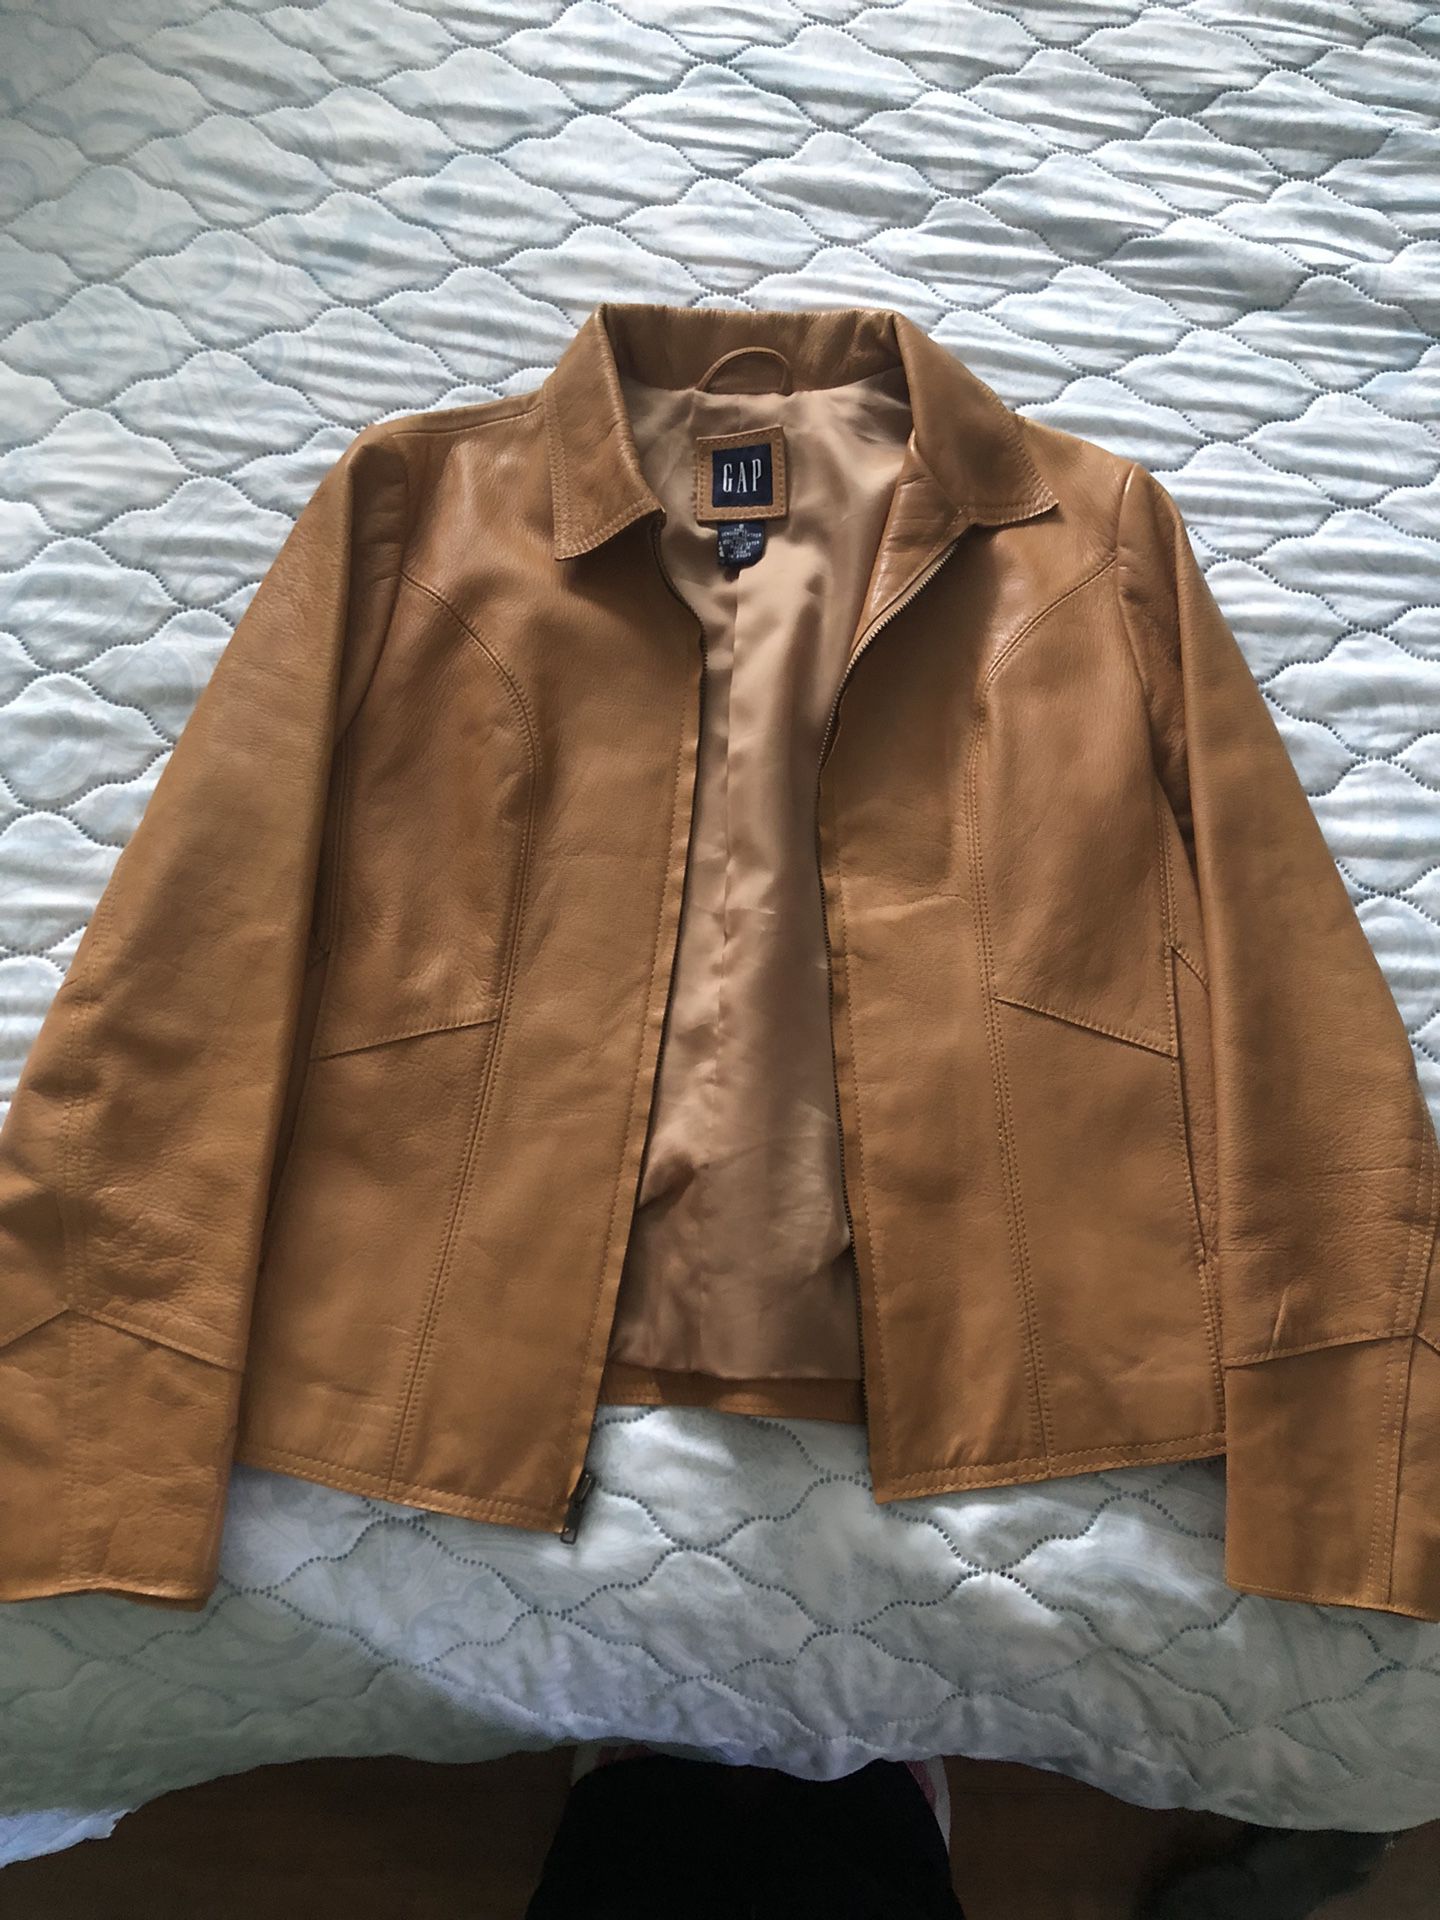 Gap Leather Jacket 